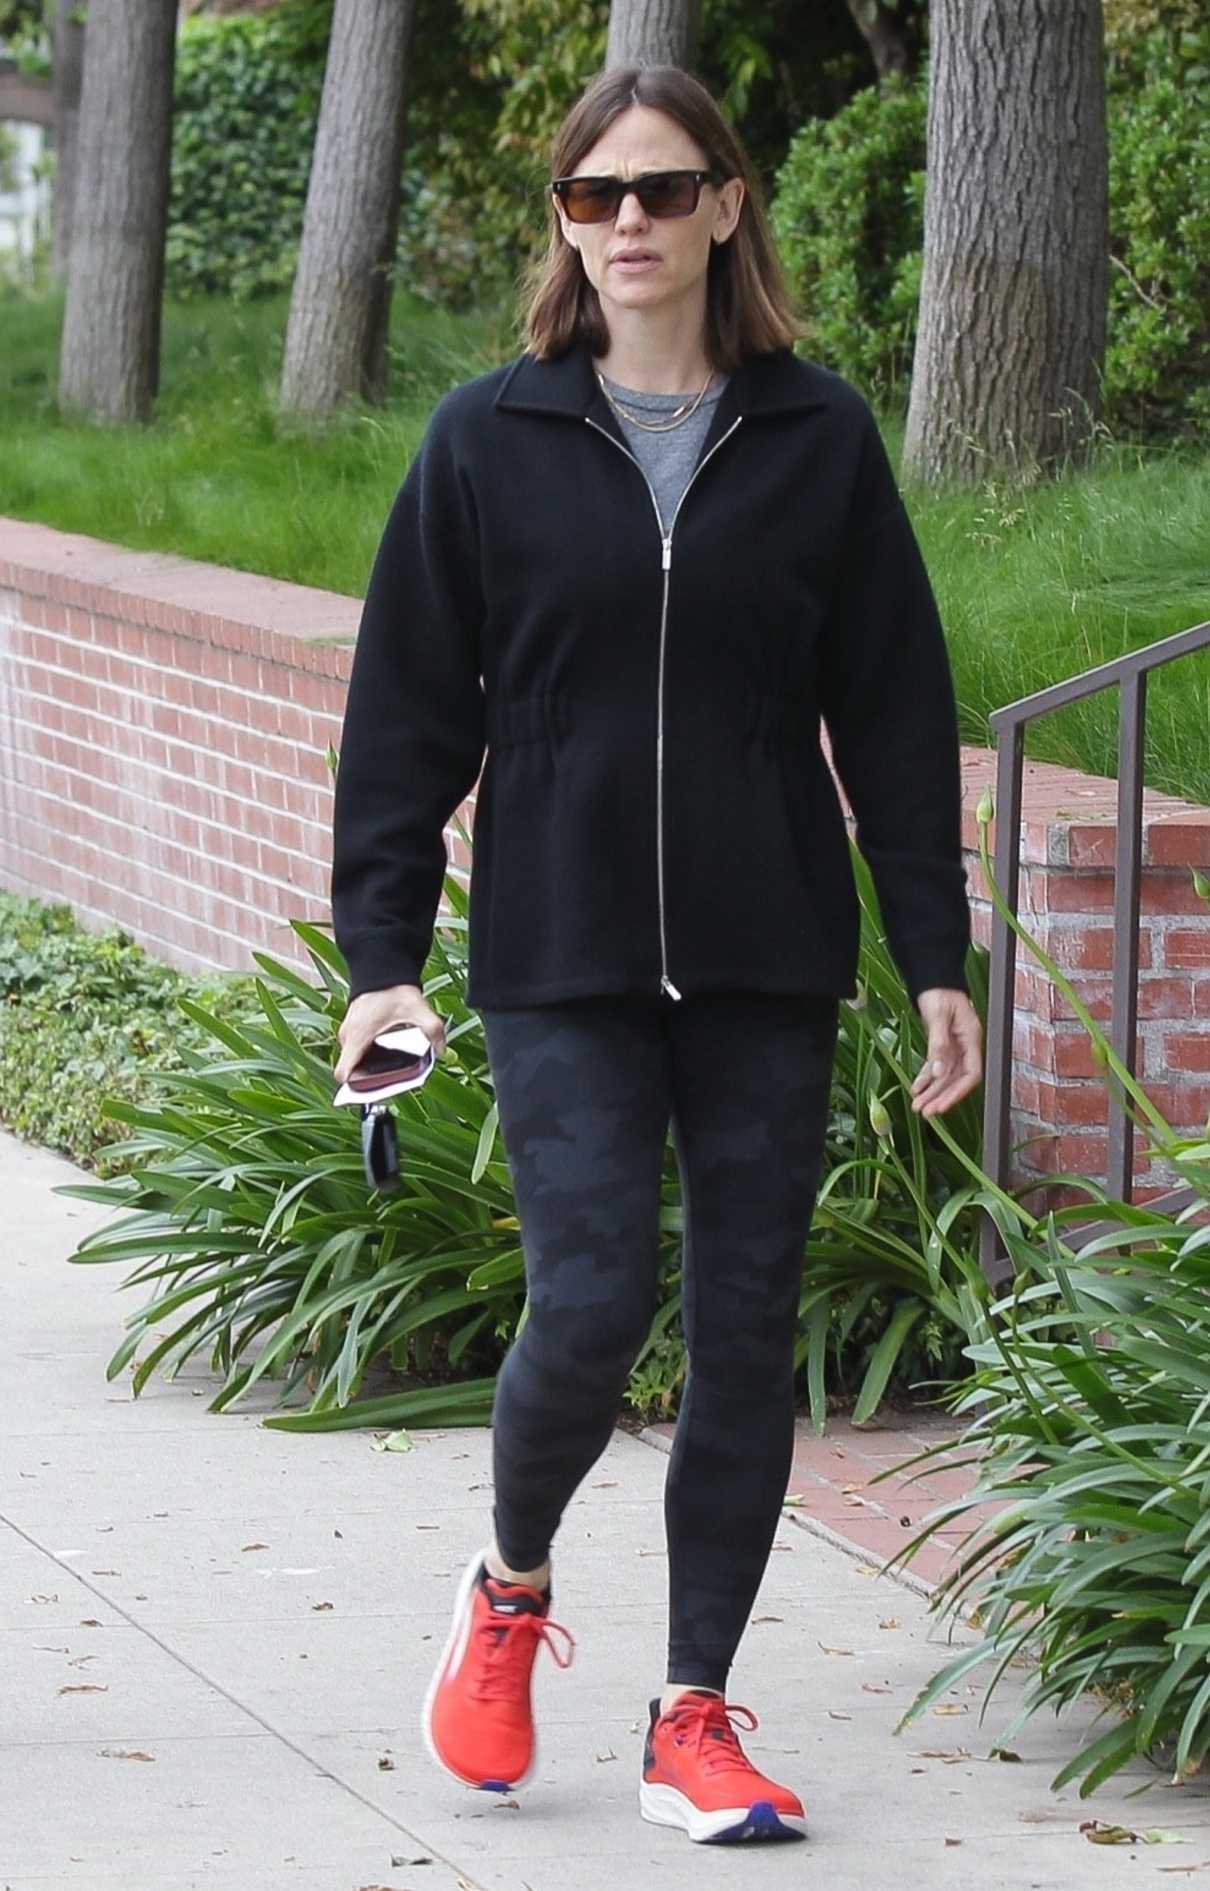 Jennifer Garner in a Red Sneakers